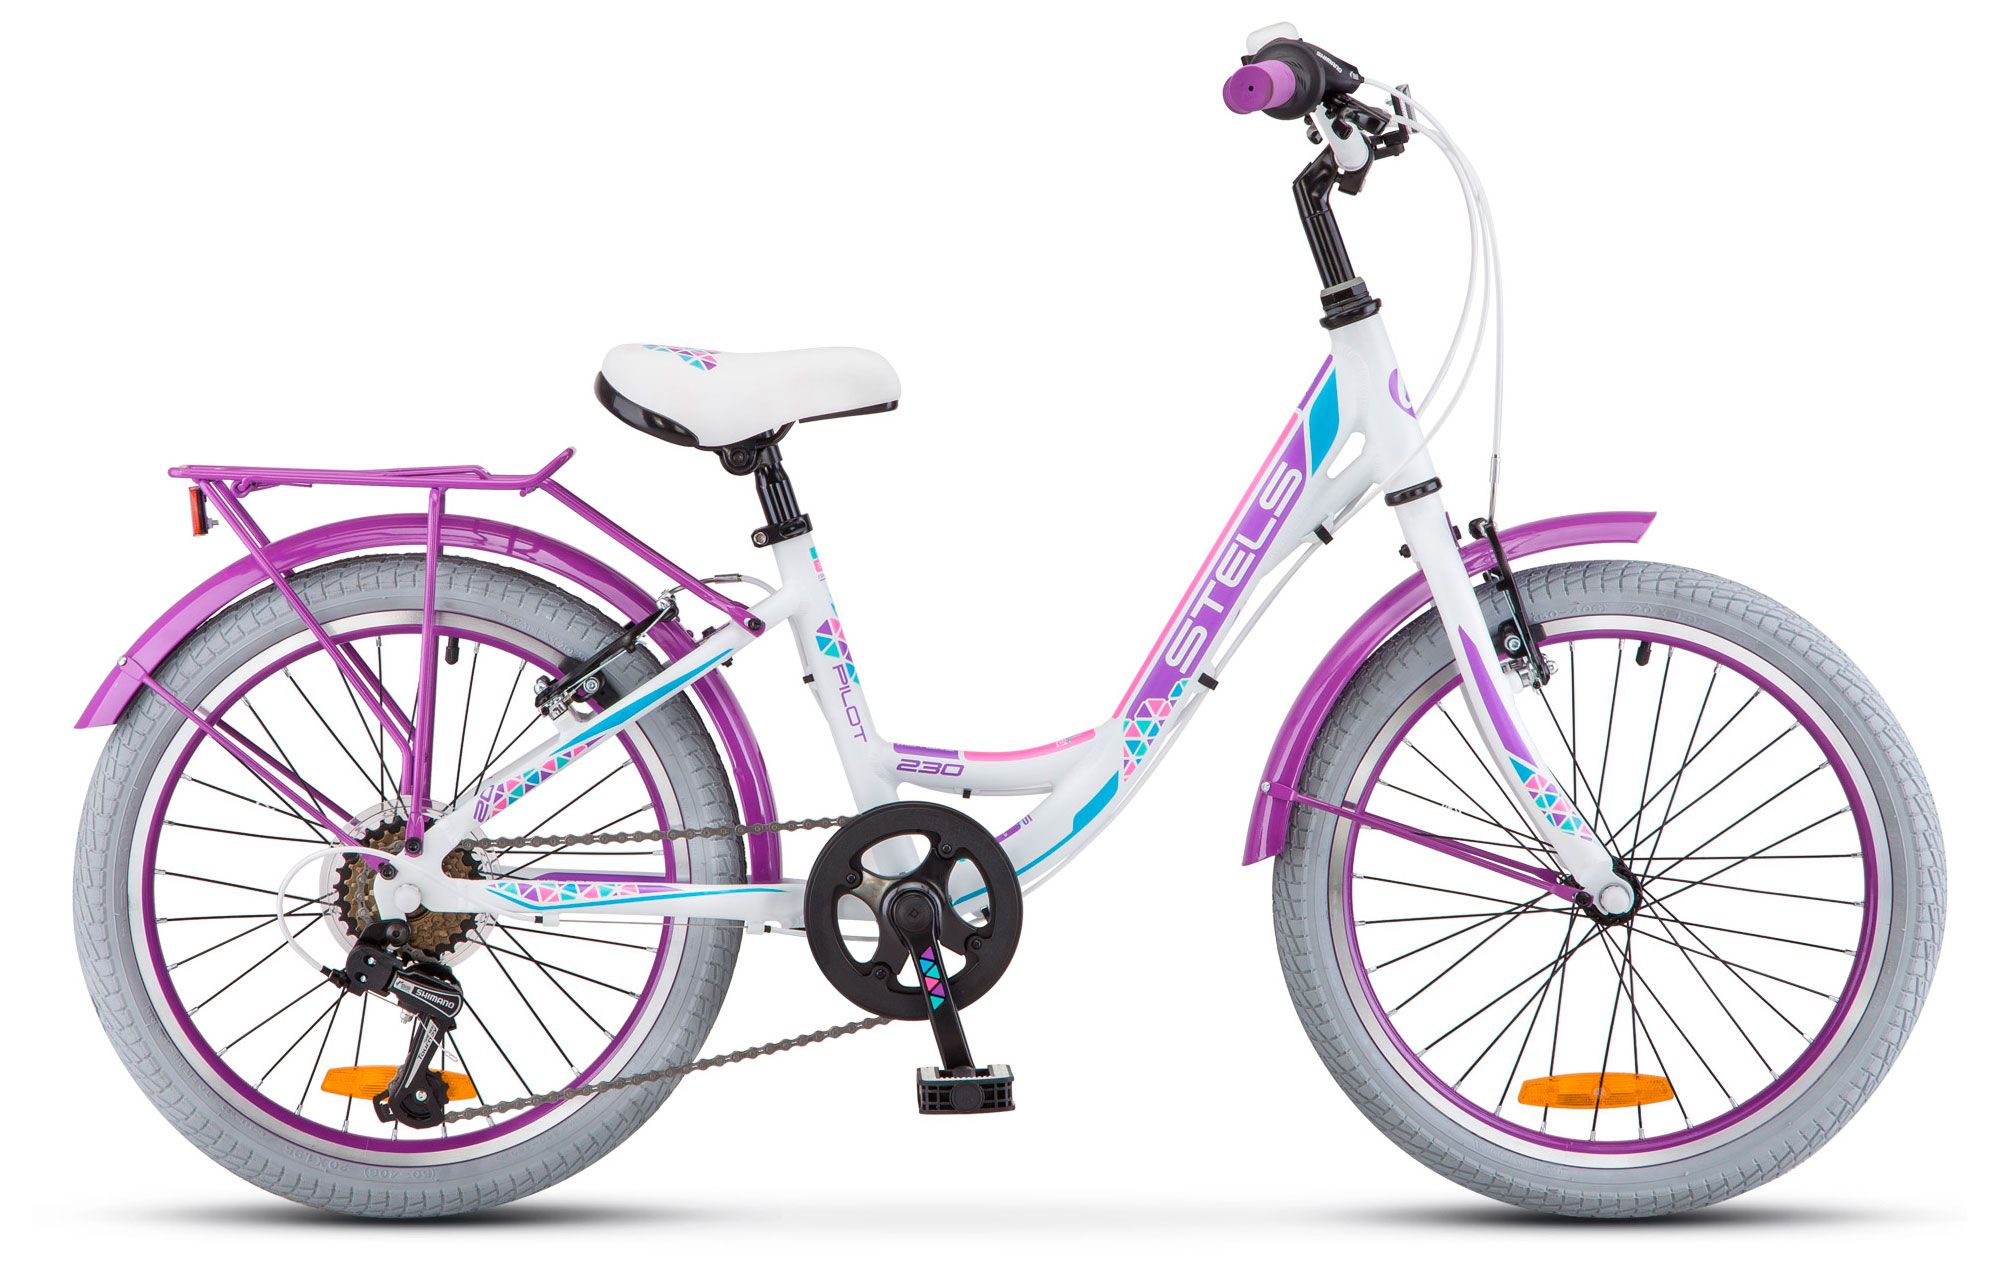  Велосипед трехколесный детский велосипед Stels Pilot-230 Lady 20 (V010) 2017